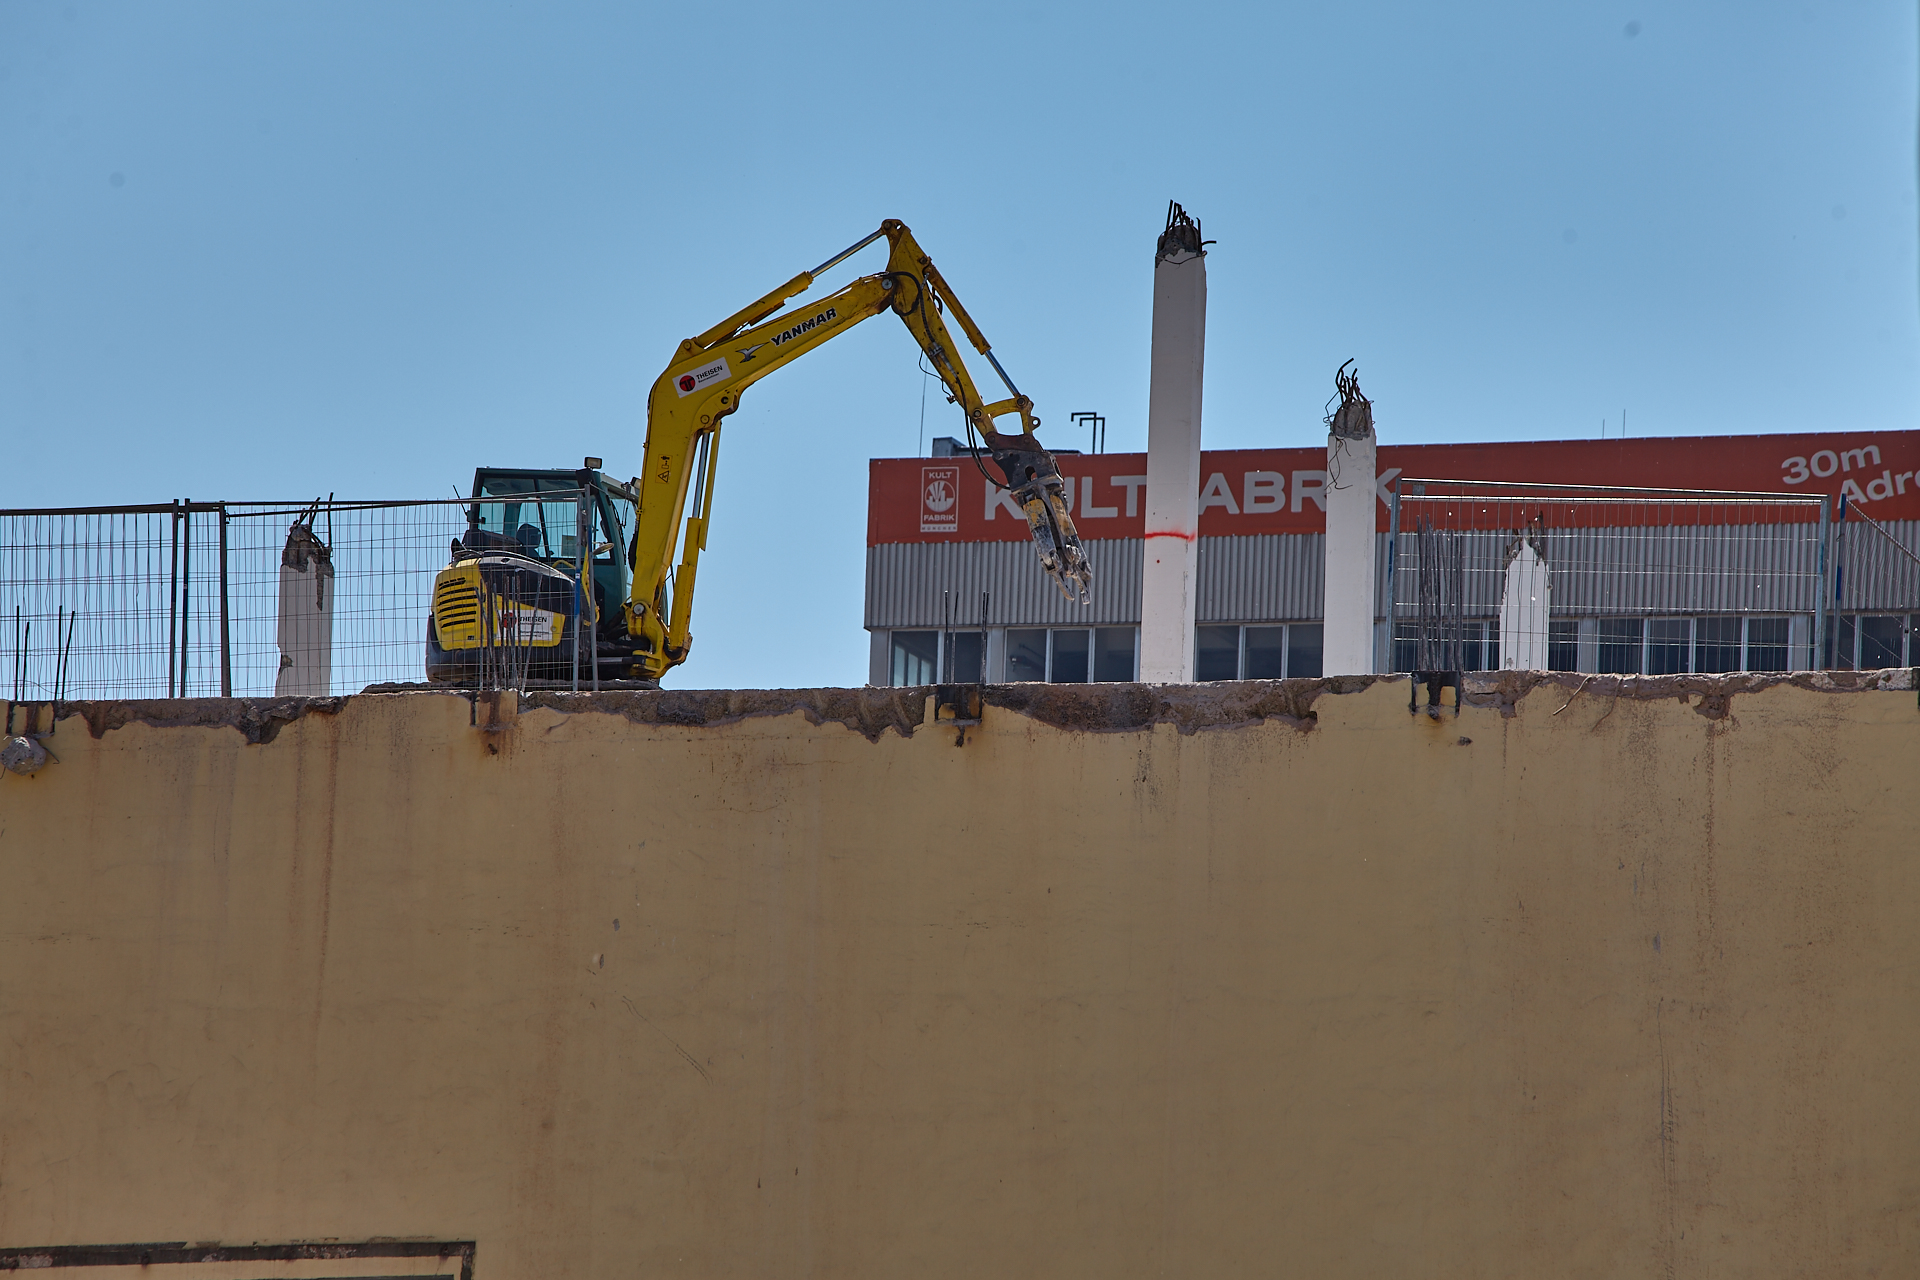 04.06.2014 - Die KULTFABRIK wird abgerissen